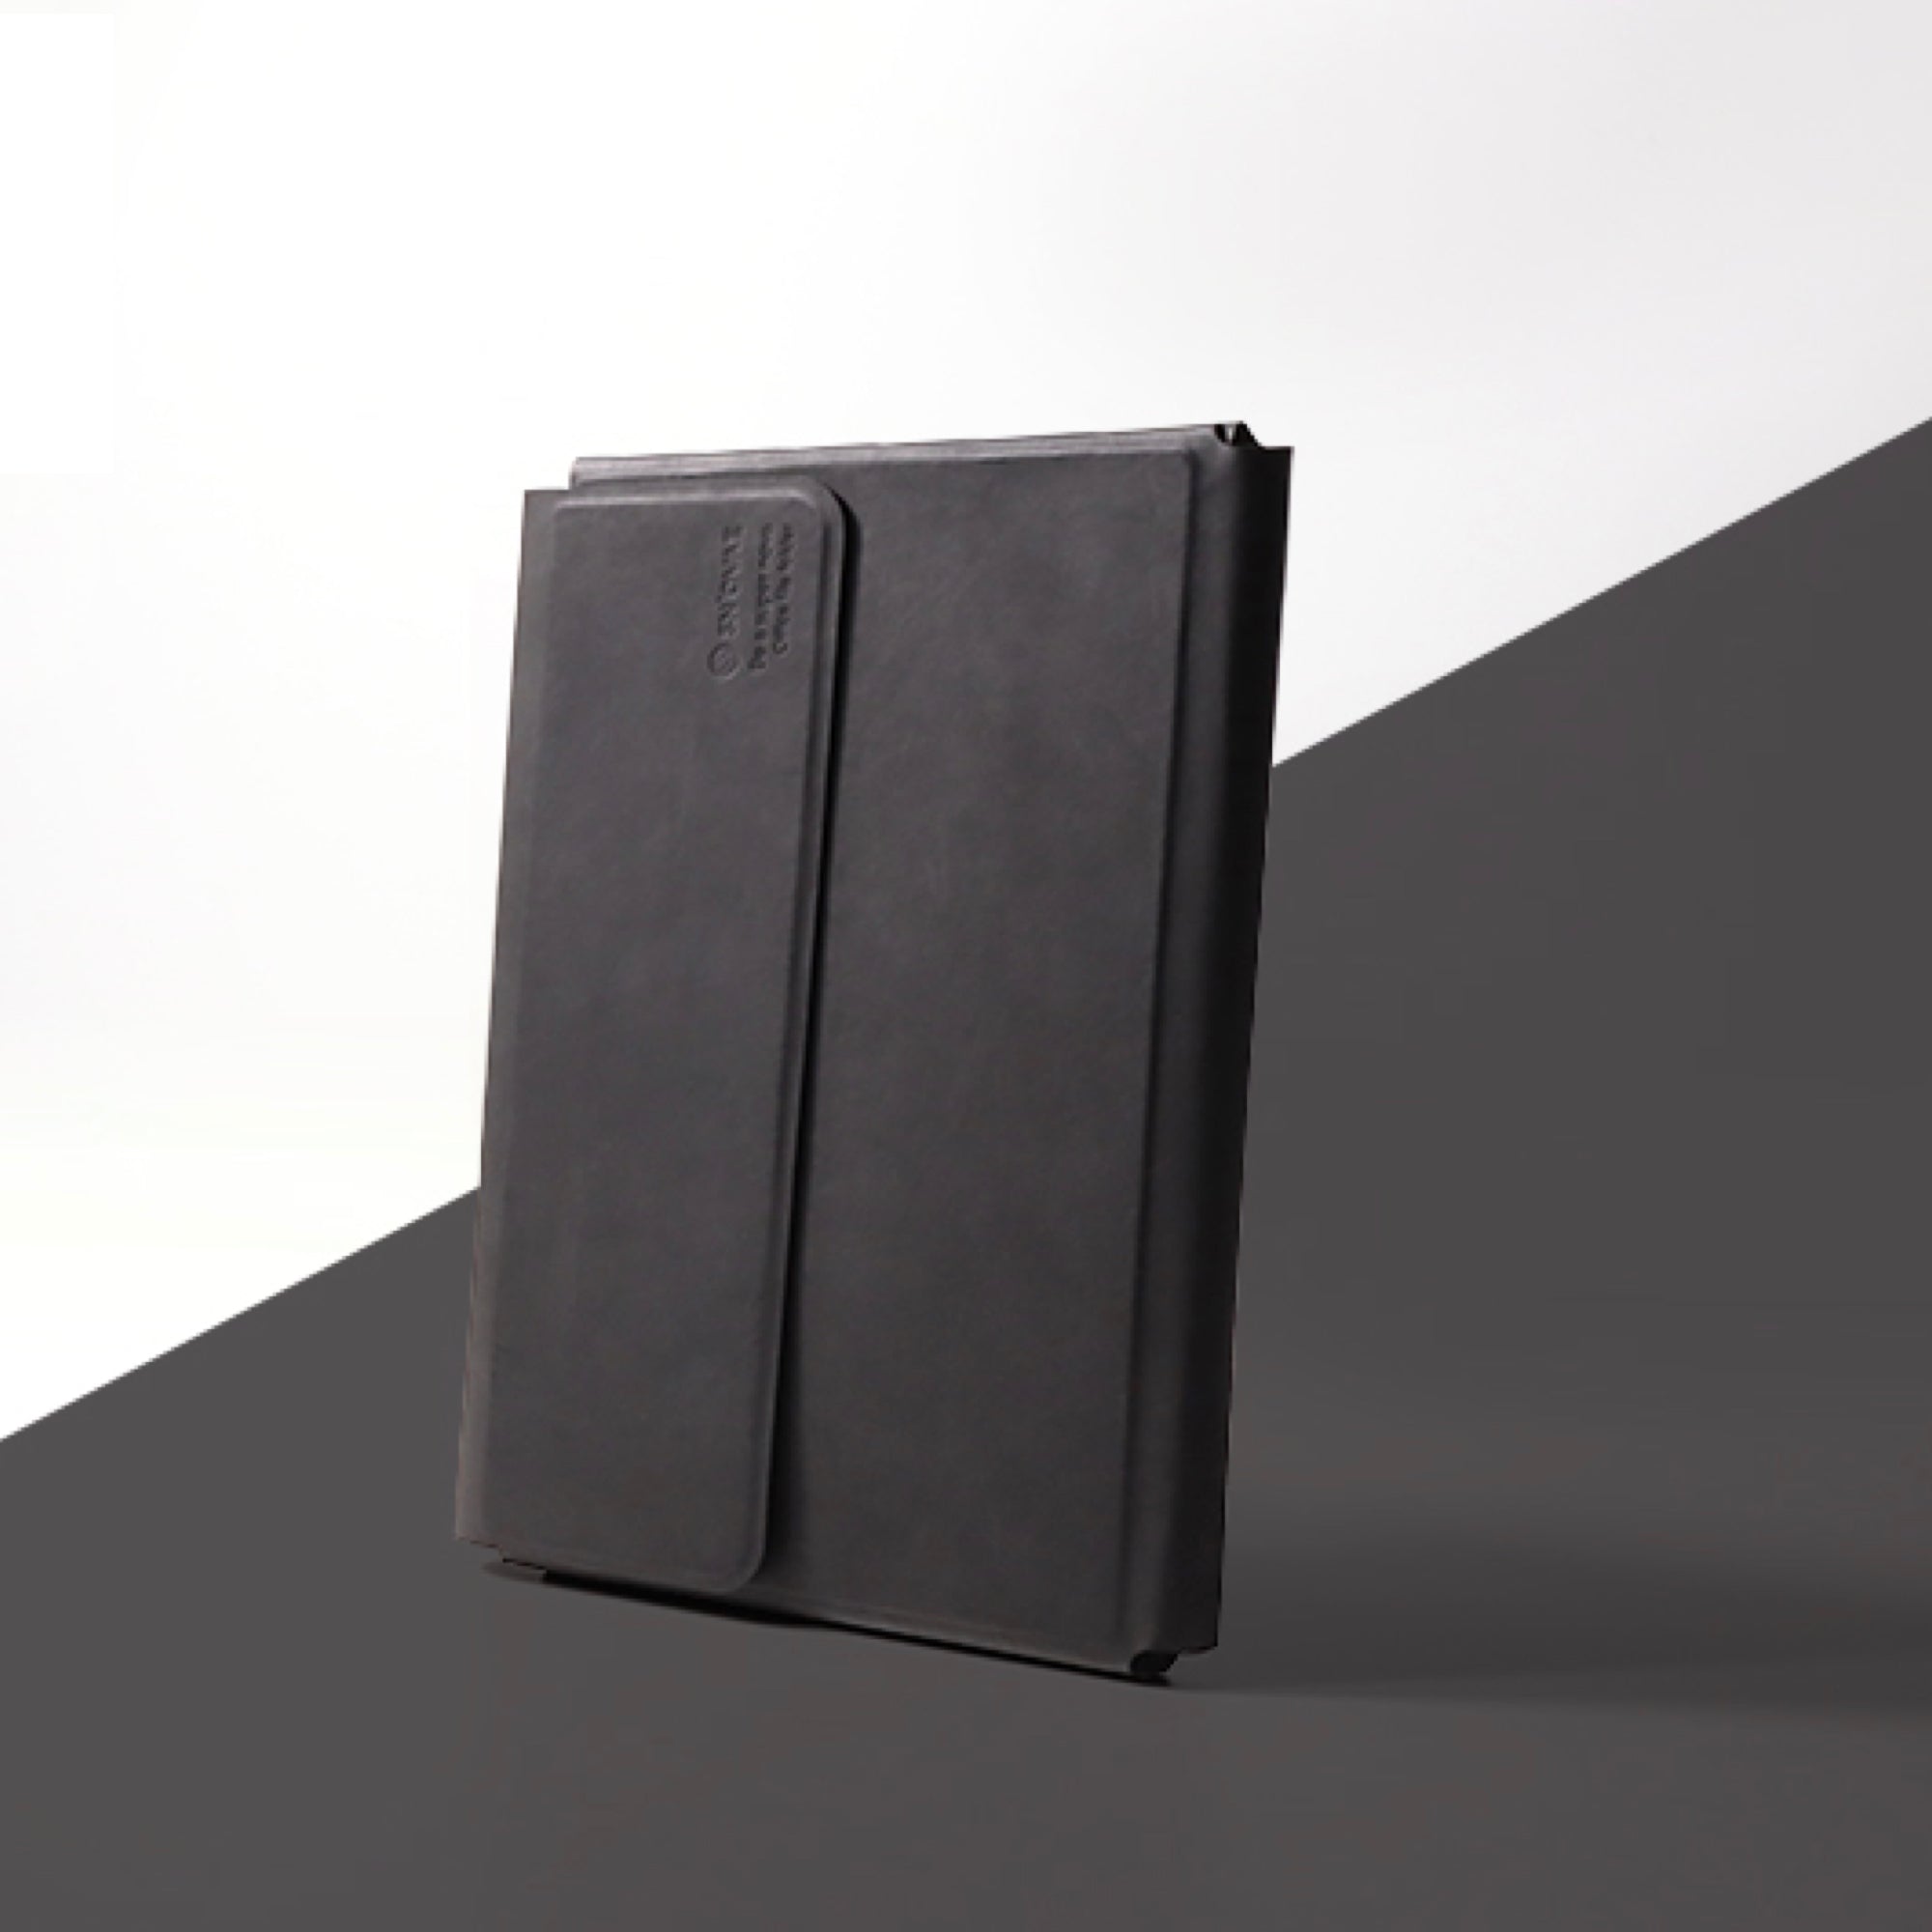 磁力で組み合わせるノートフォルダ「A5 office folder」 – 10 square 